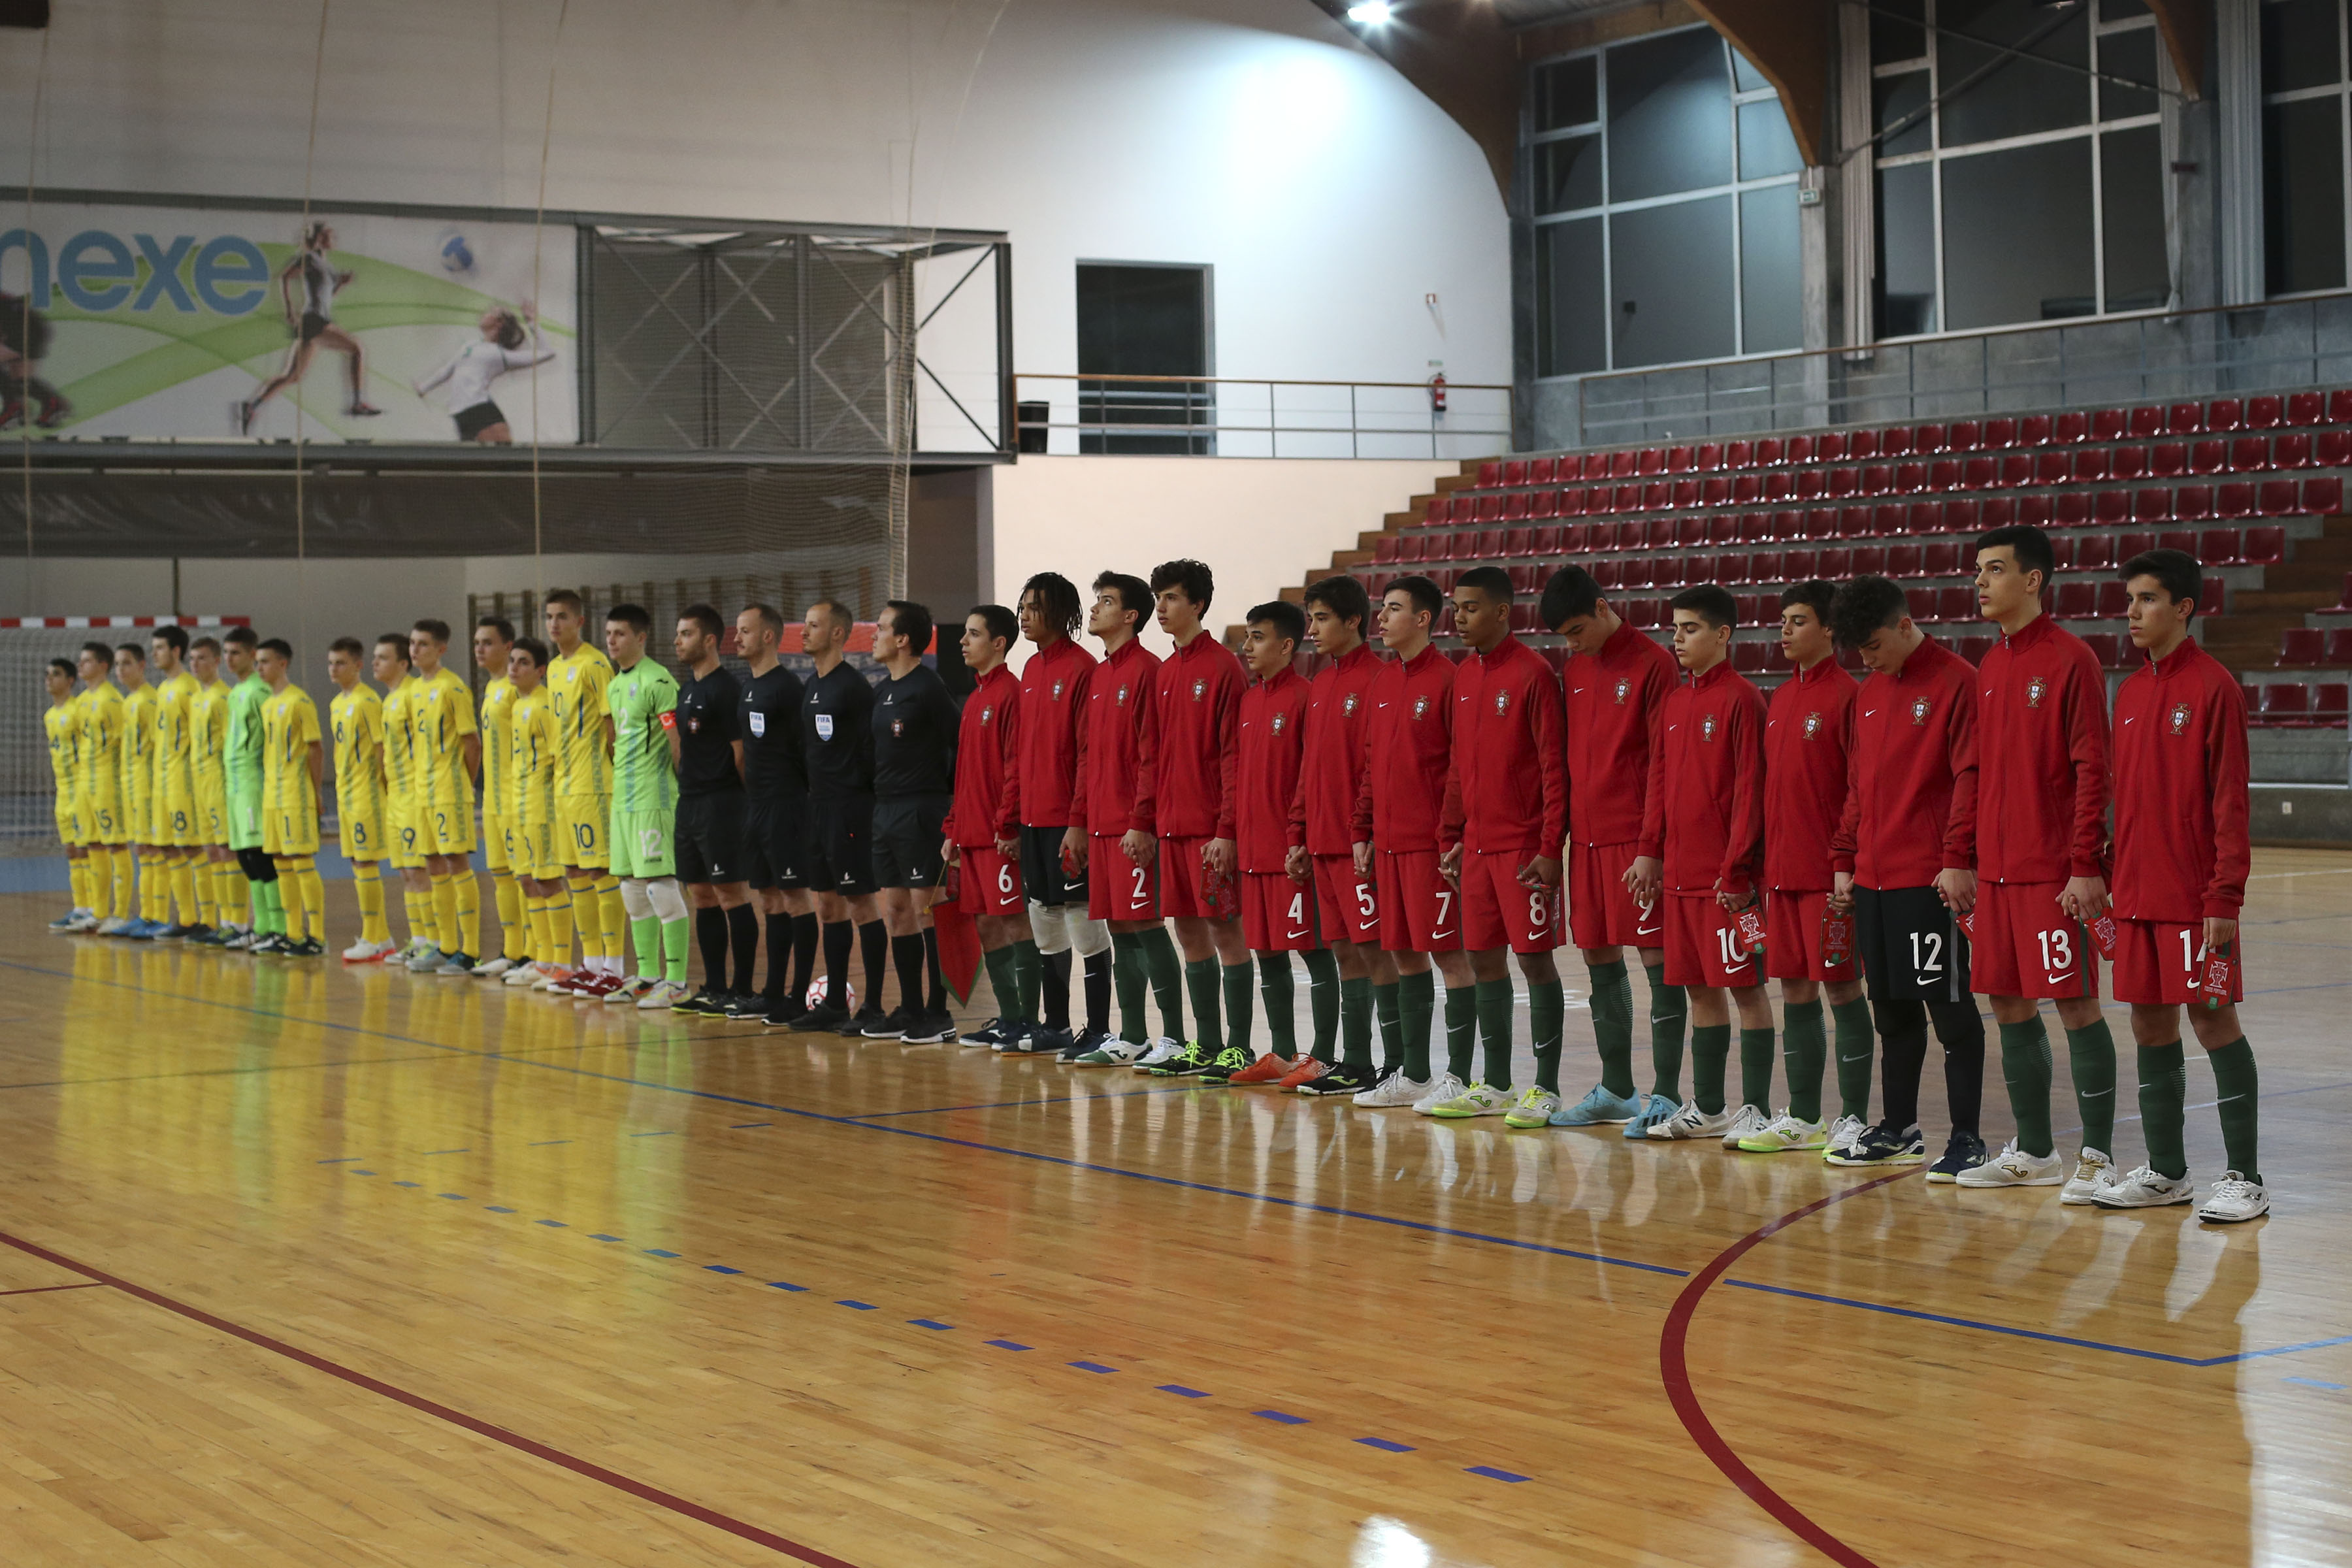 Jogos da Selecção Nacional de Futsal Masculino Sub-17 em Viana do Castelo mostram que a modalidade está num bom ritmo de desenvolvimento